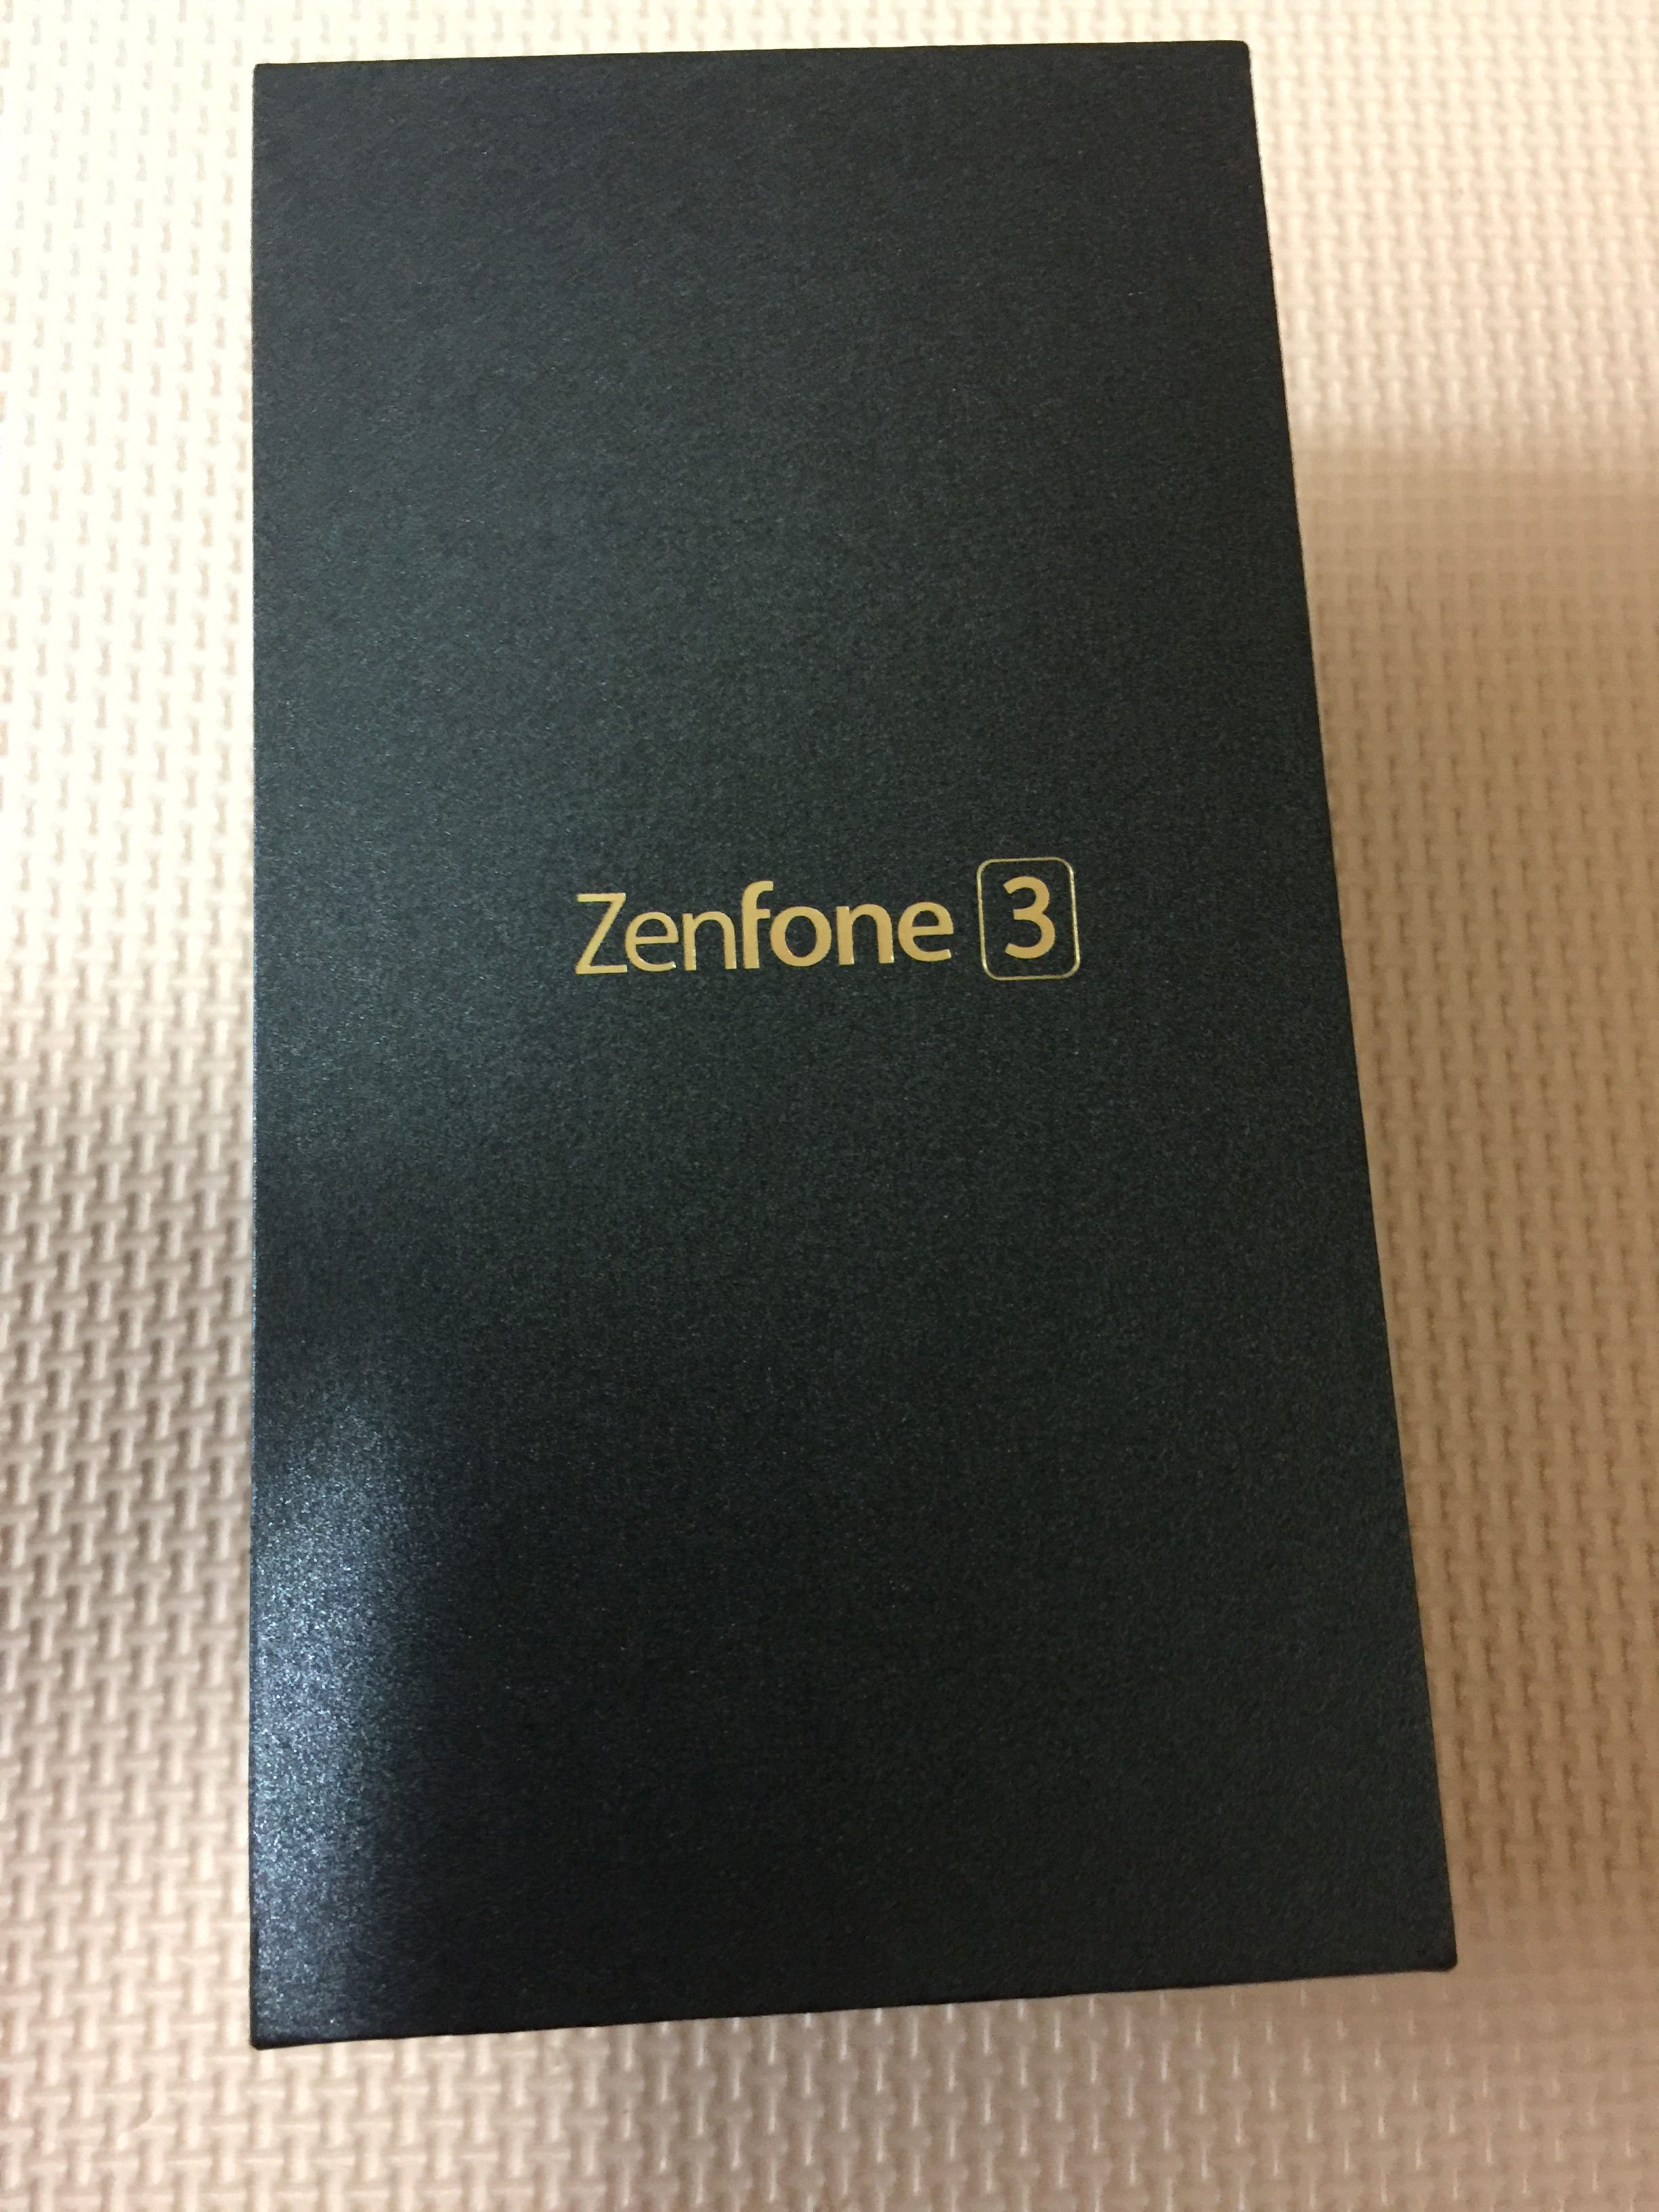 zenfone3を購入して